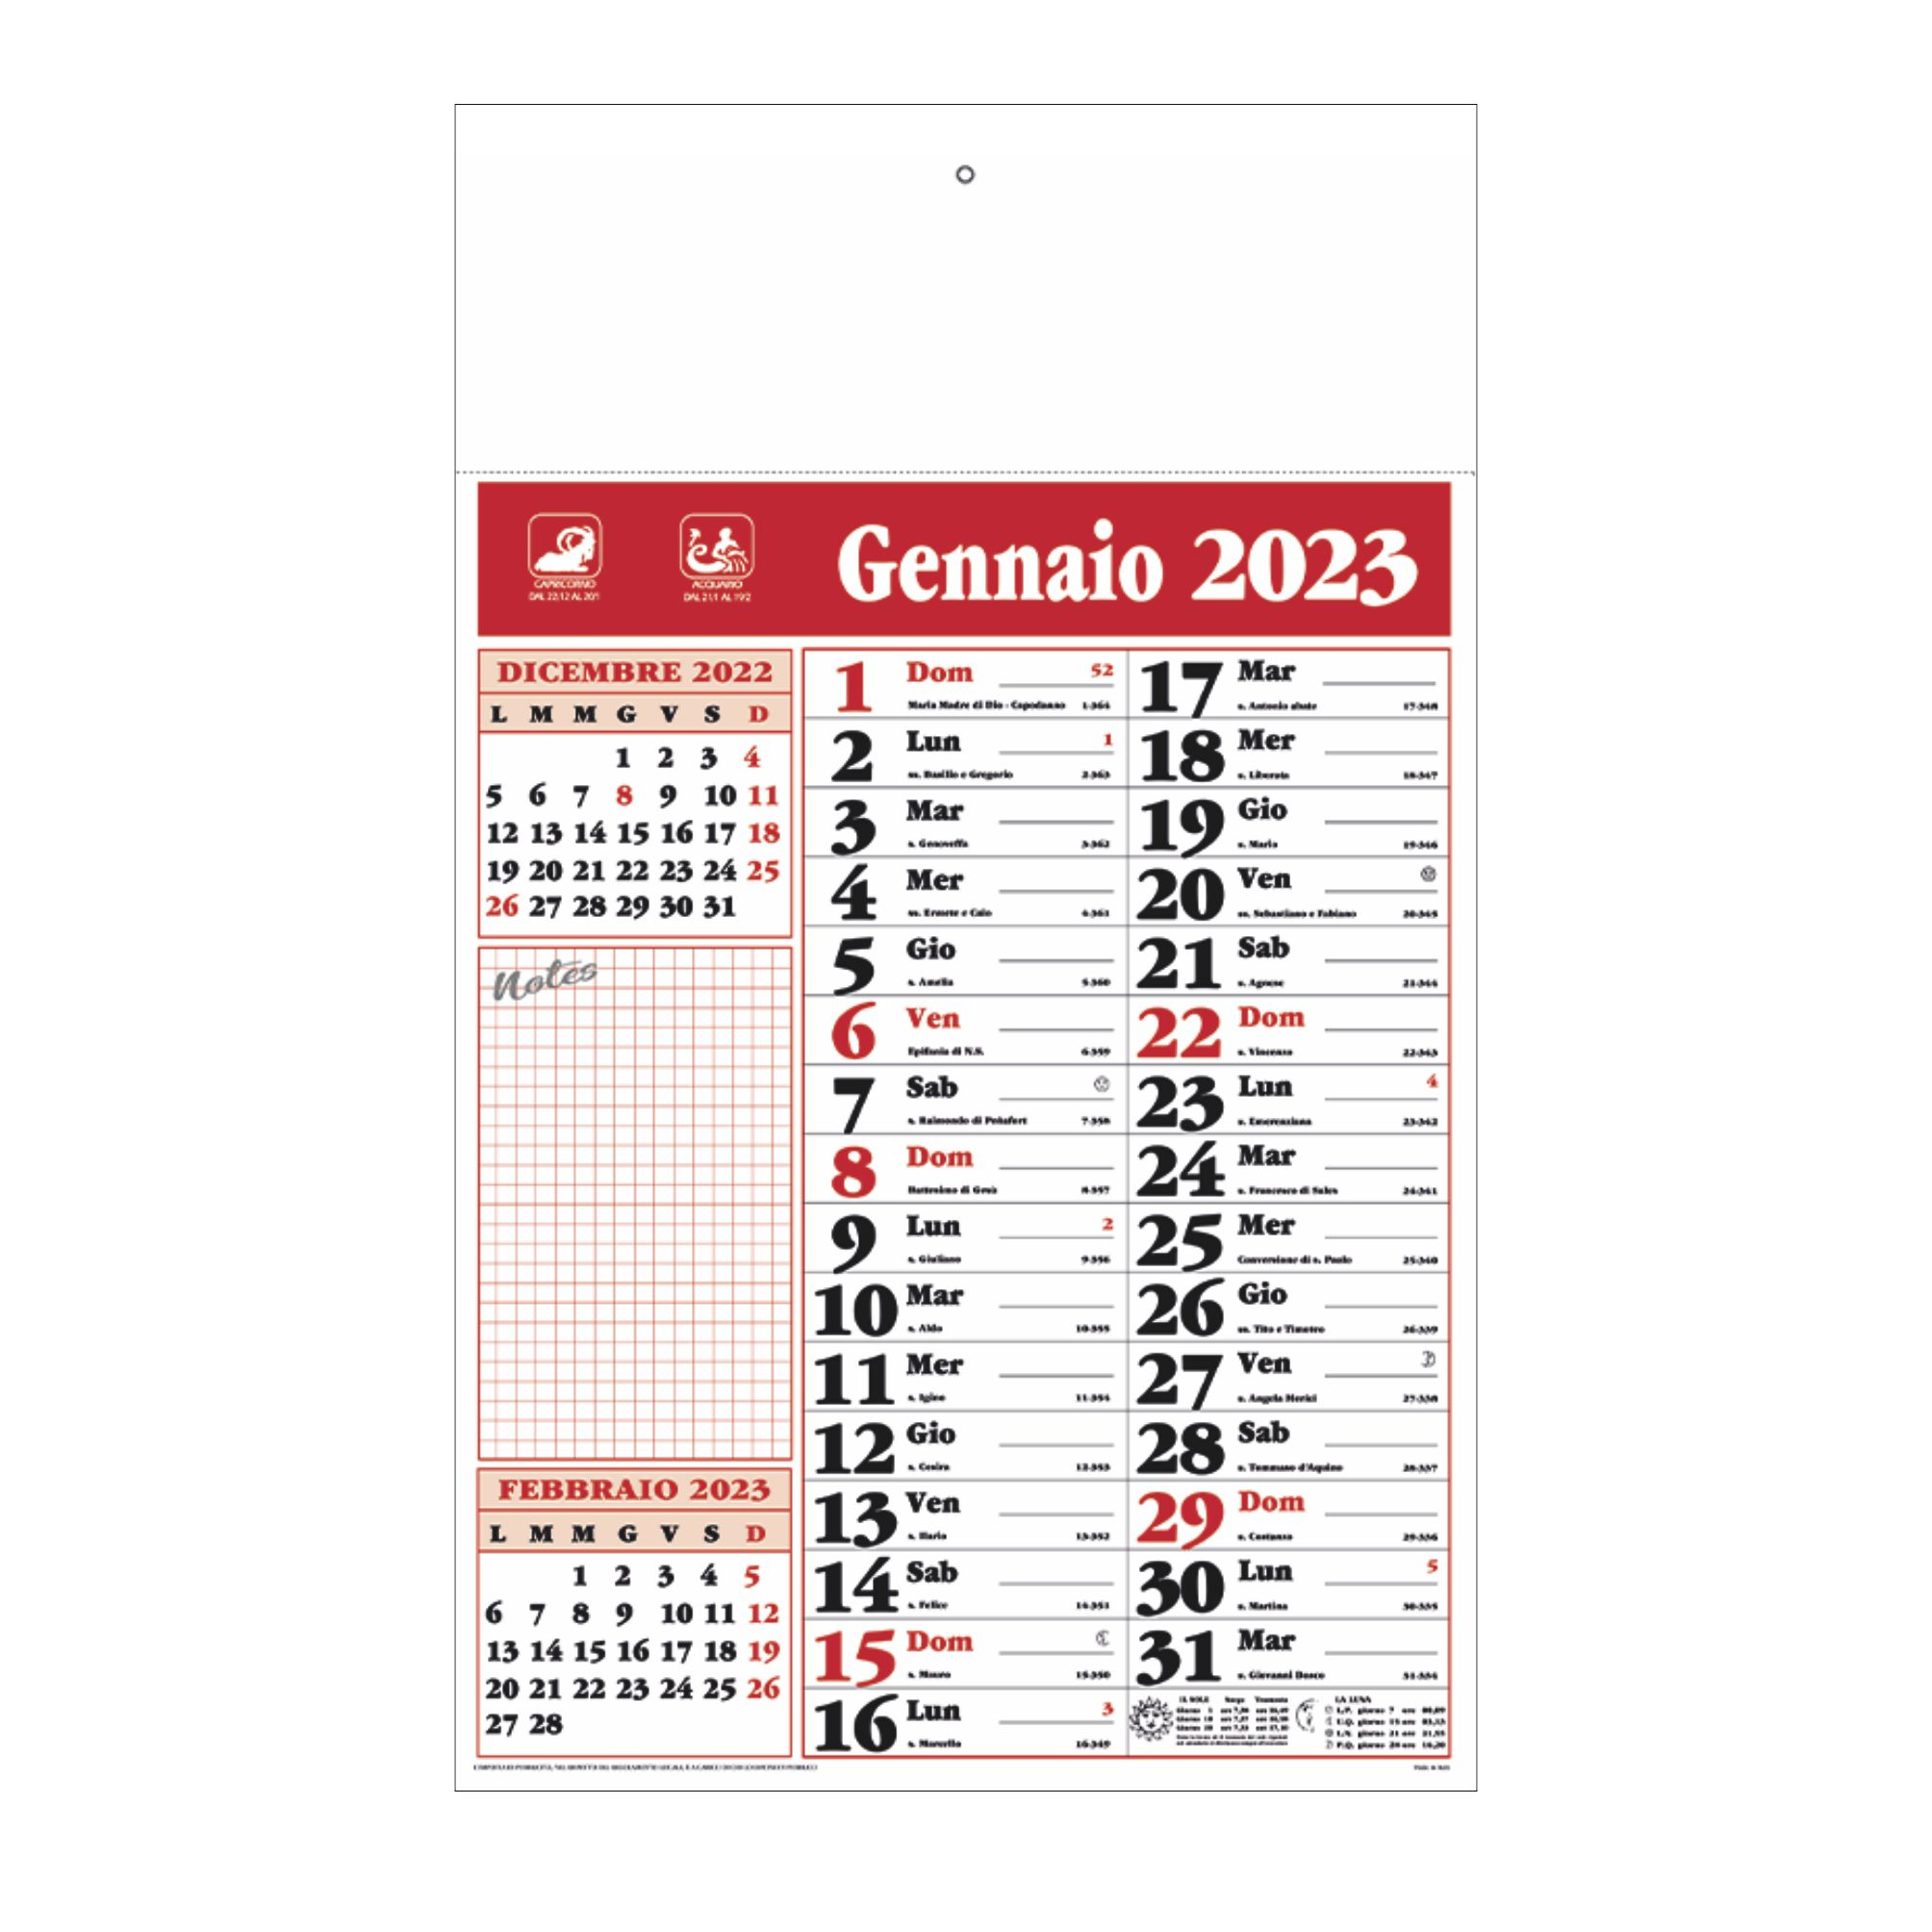 b-60-calendario-olandese-notes-rosso.jpg